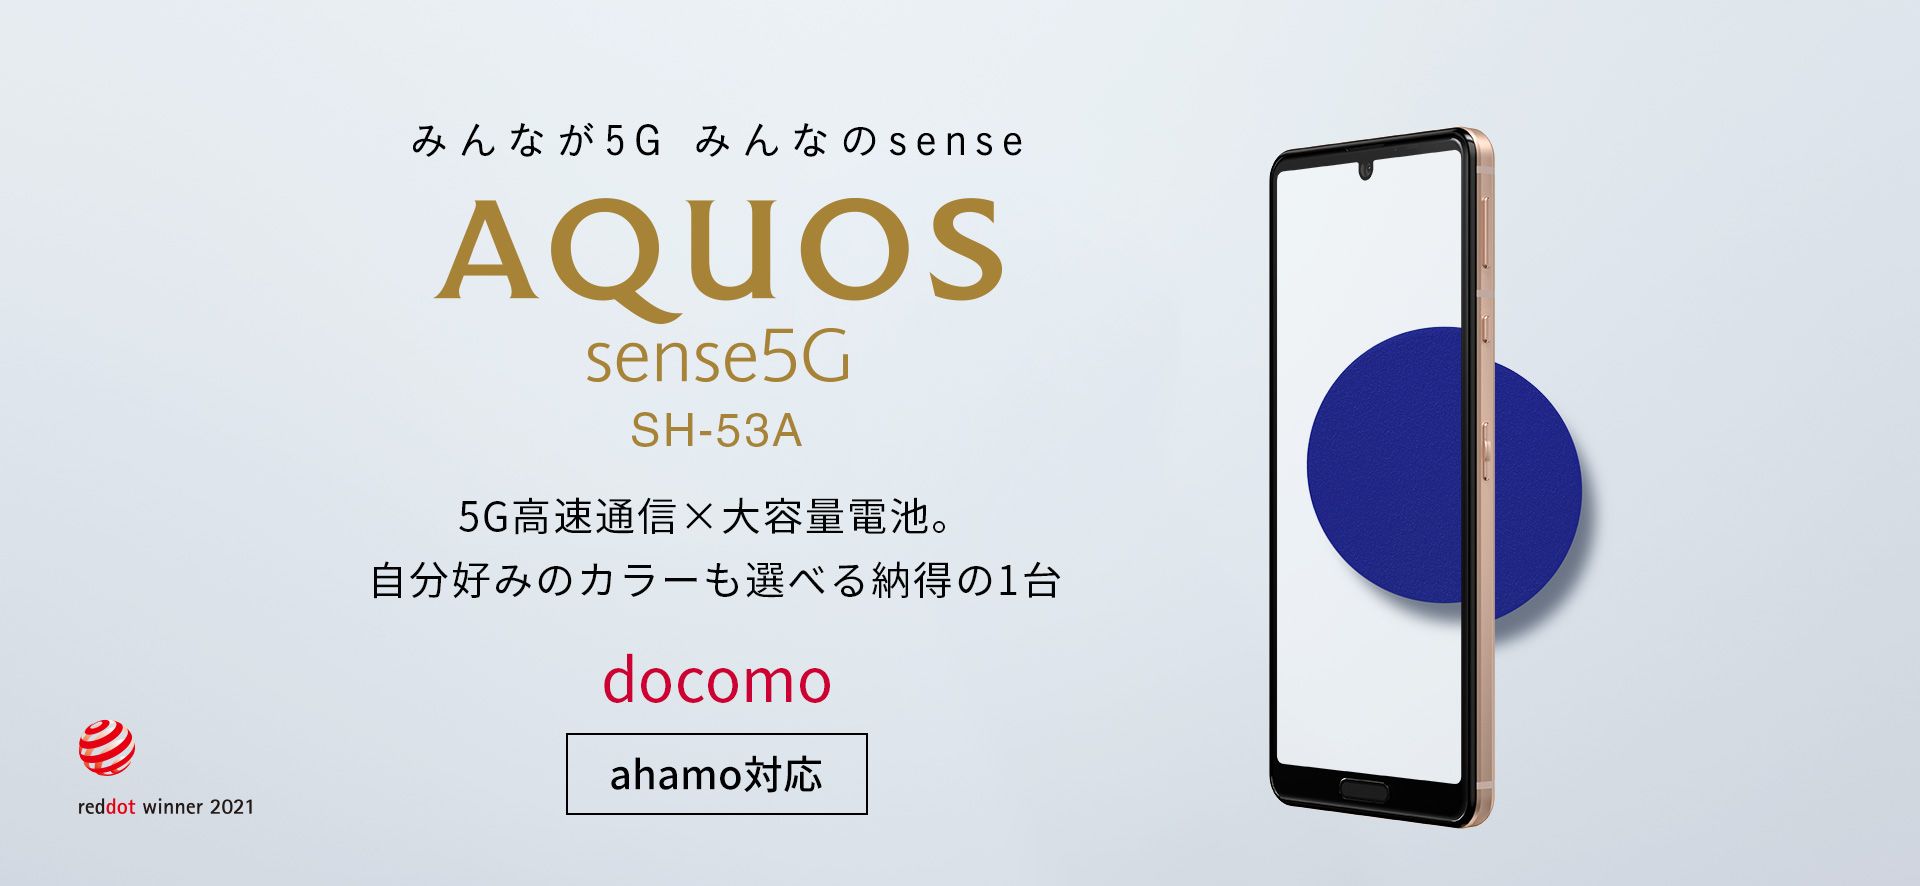 Android 12提供予定のAQUOS sense5G SH-53Aがイオシスで16,800円(税込)